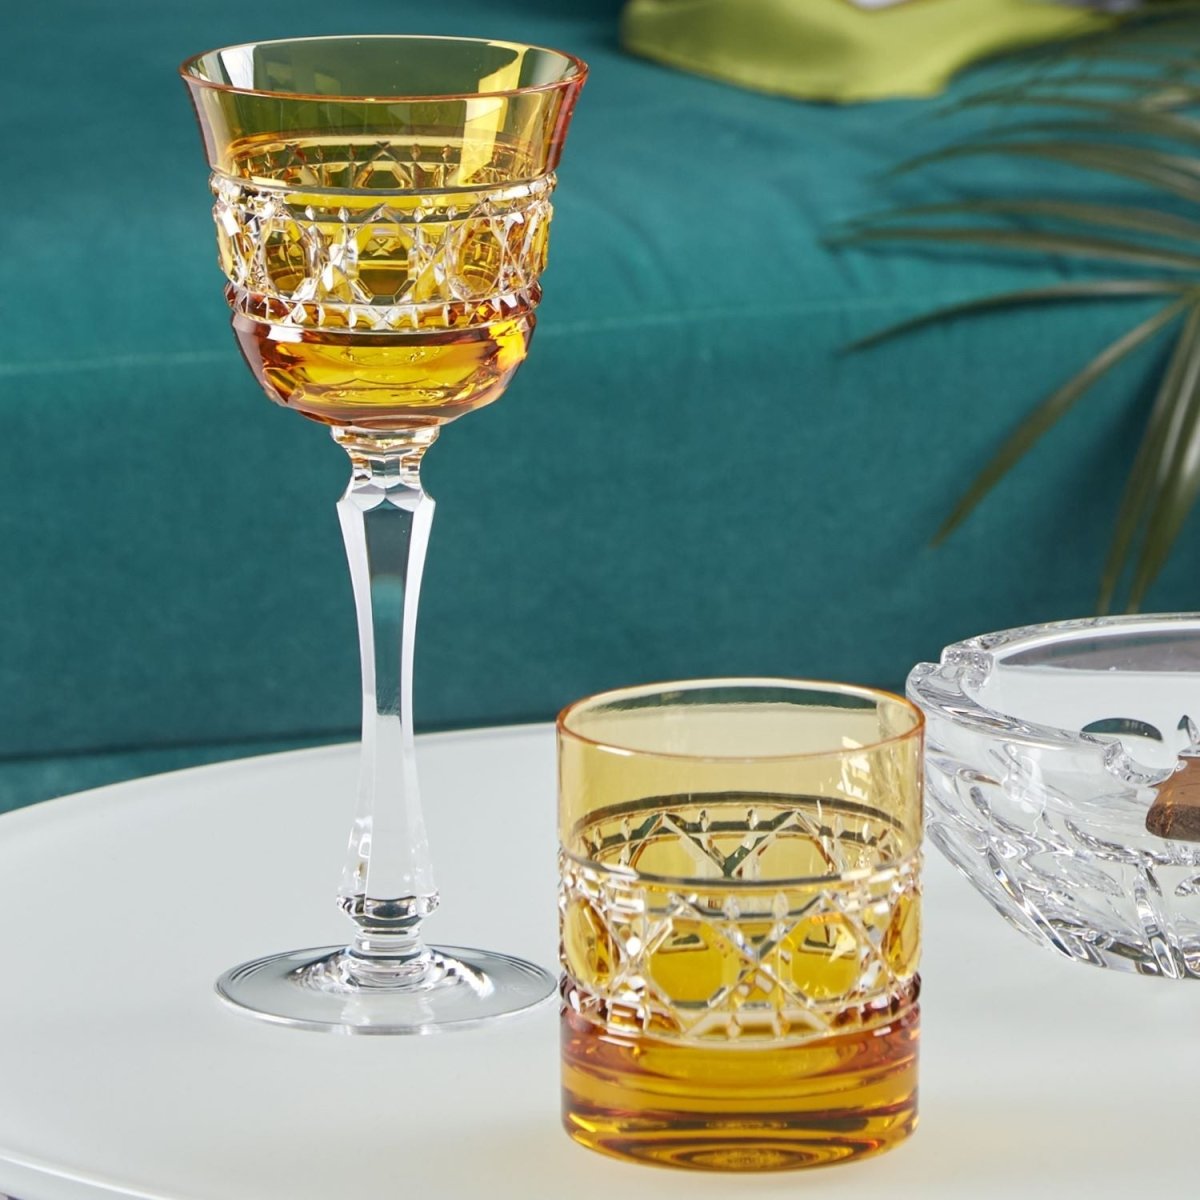 Jacquard - Old fashion - Cristallerie de Montbronn-Verre à whisky